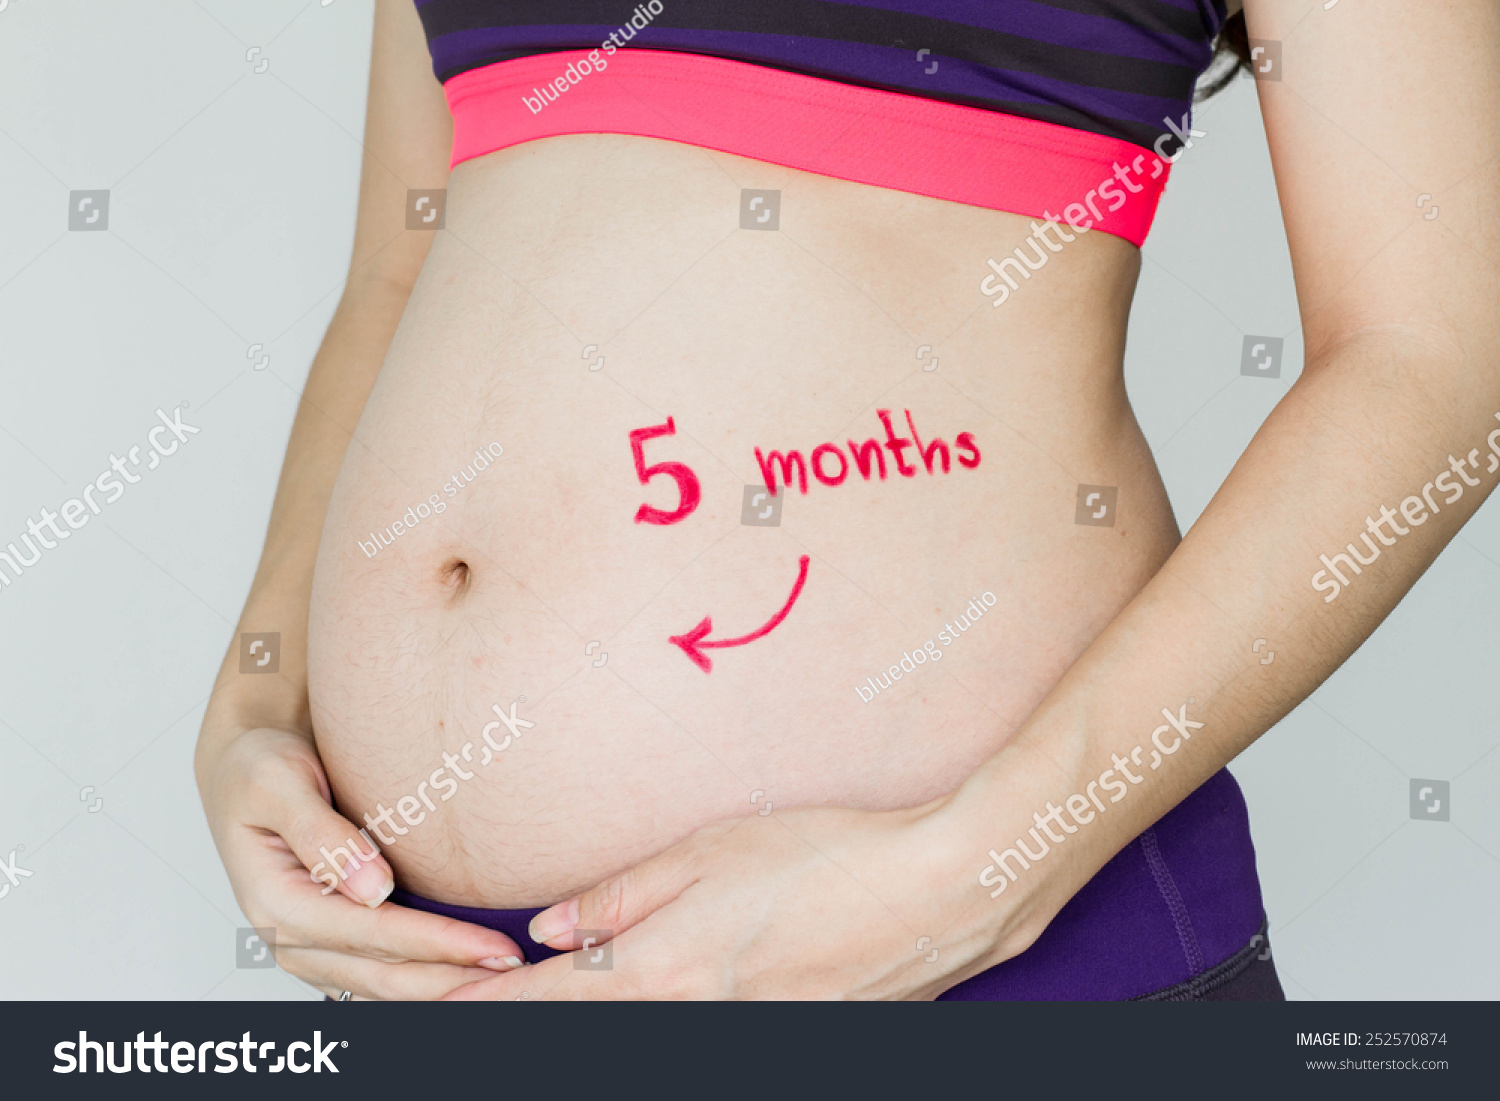 грудь и живот на раннем сроке беременности фото 53